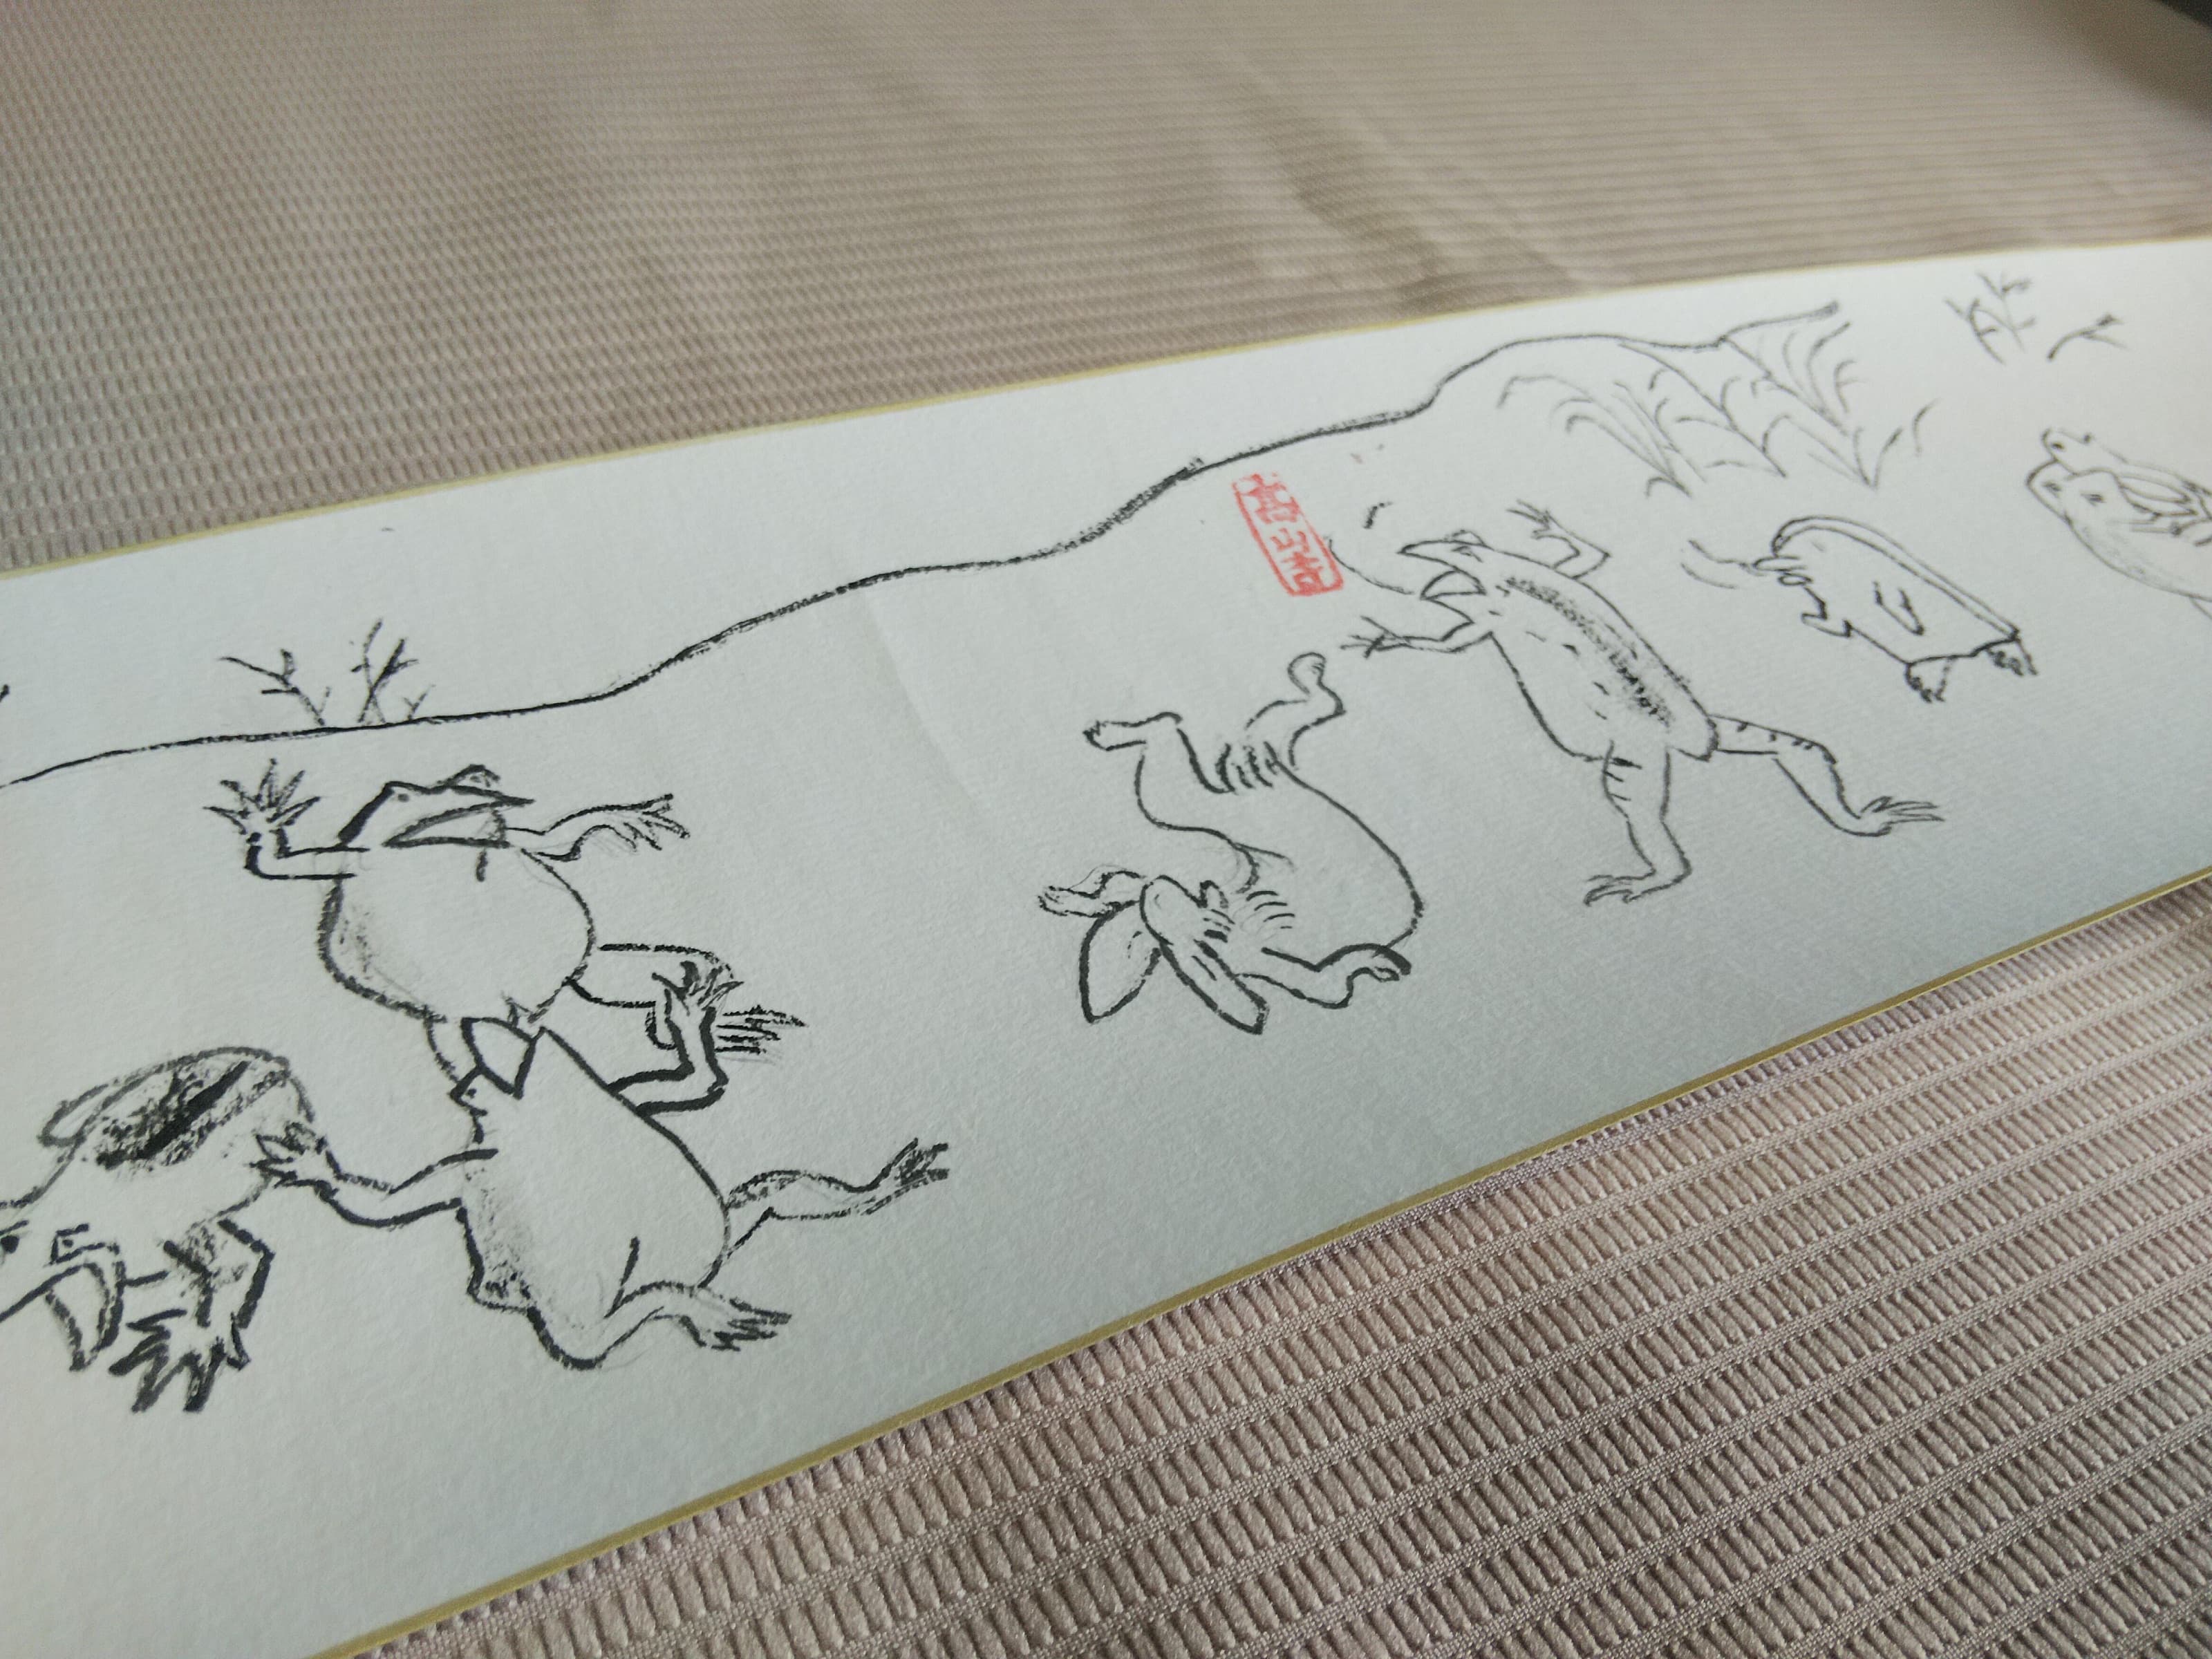 酒田第四中学校 鳥獣戯画の魅力 開催のお知らせ 株式会社ブルー